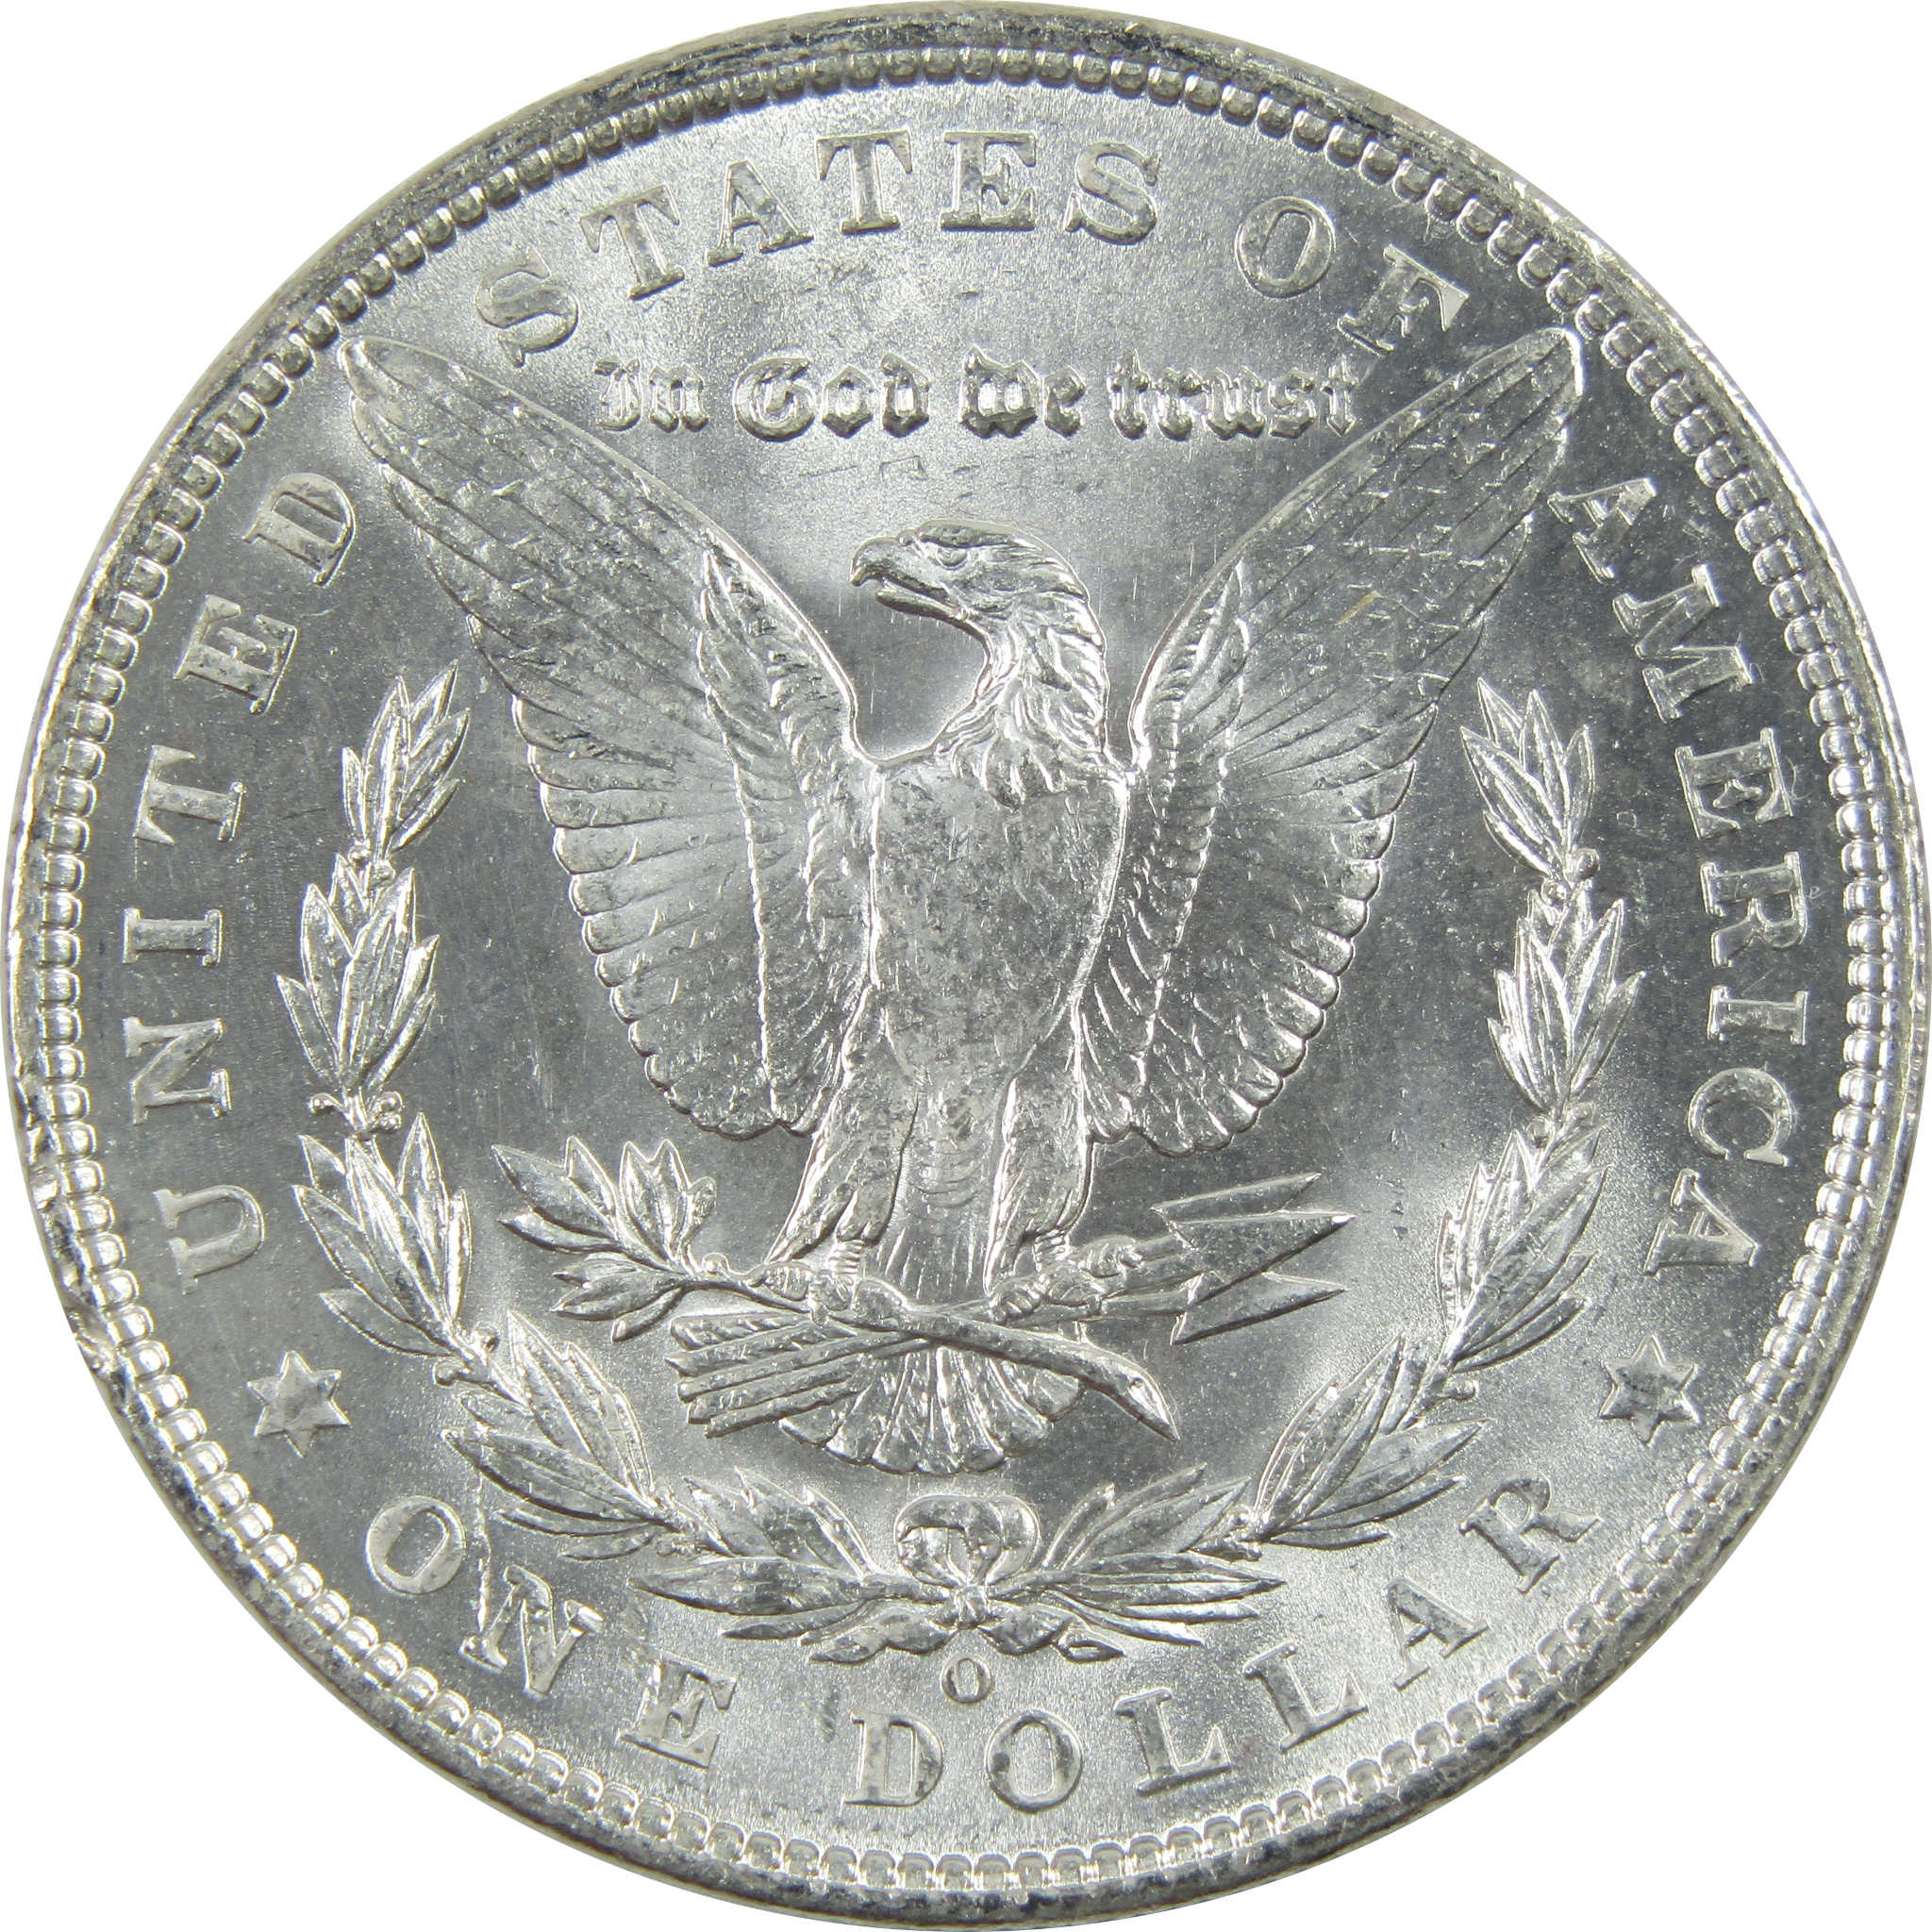 1903 O Morgan Dollar Uncirculated Silver $1 Coin SKU:I11737 - Morgan coin - Morgan silver dollar - Morgan silver dollar for sale - Profile Coins &amp; Collectibles